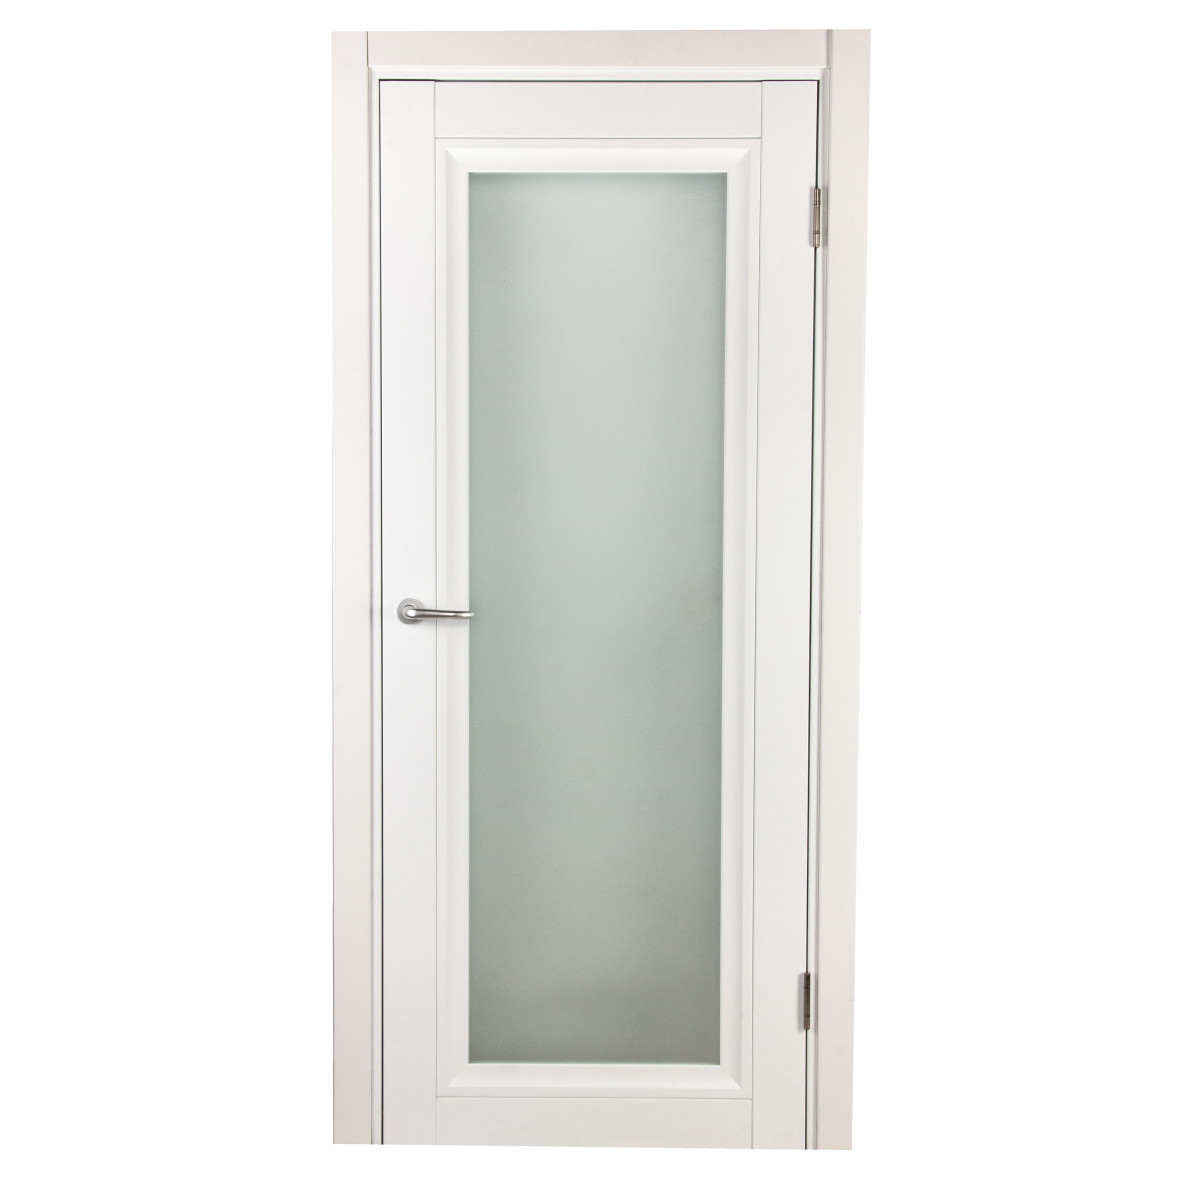 Дверь межкомнатная остекленная Нобиле пп белый 2000x600 мм с замком